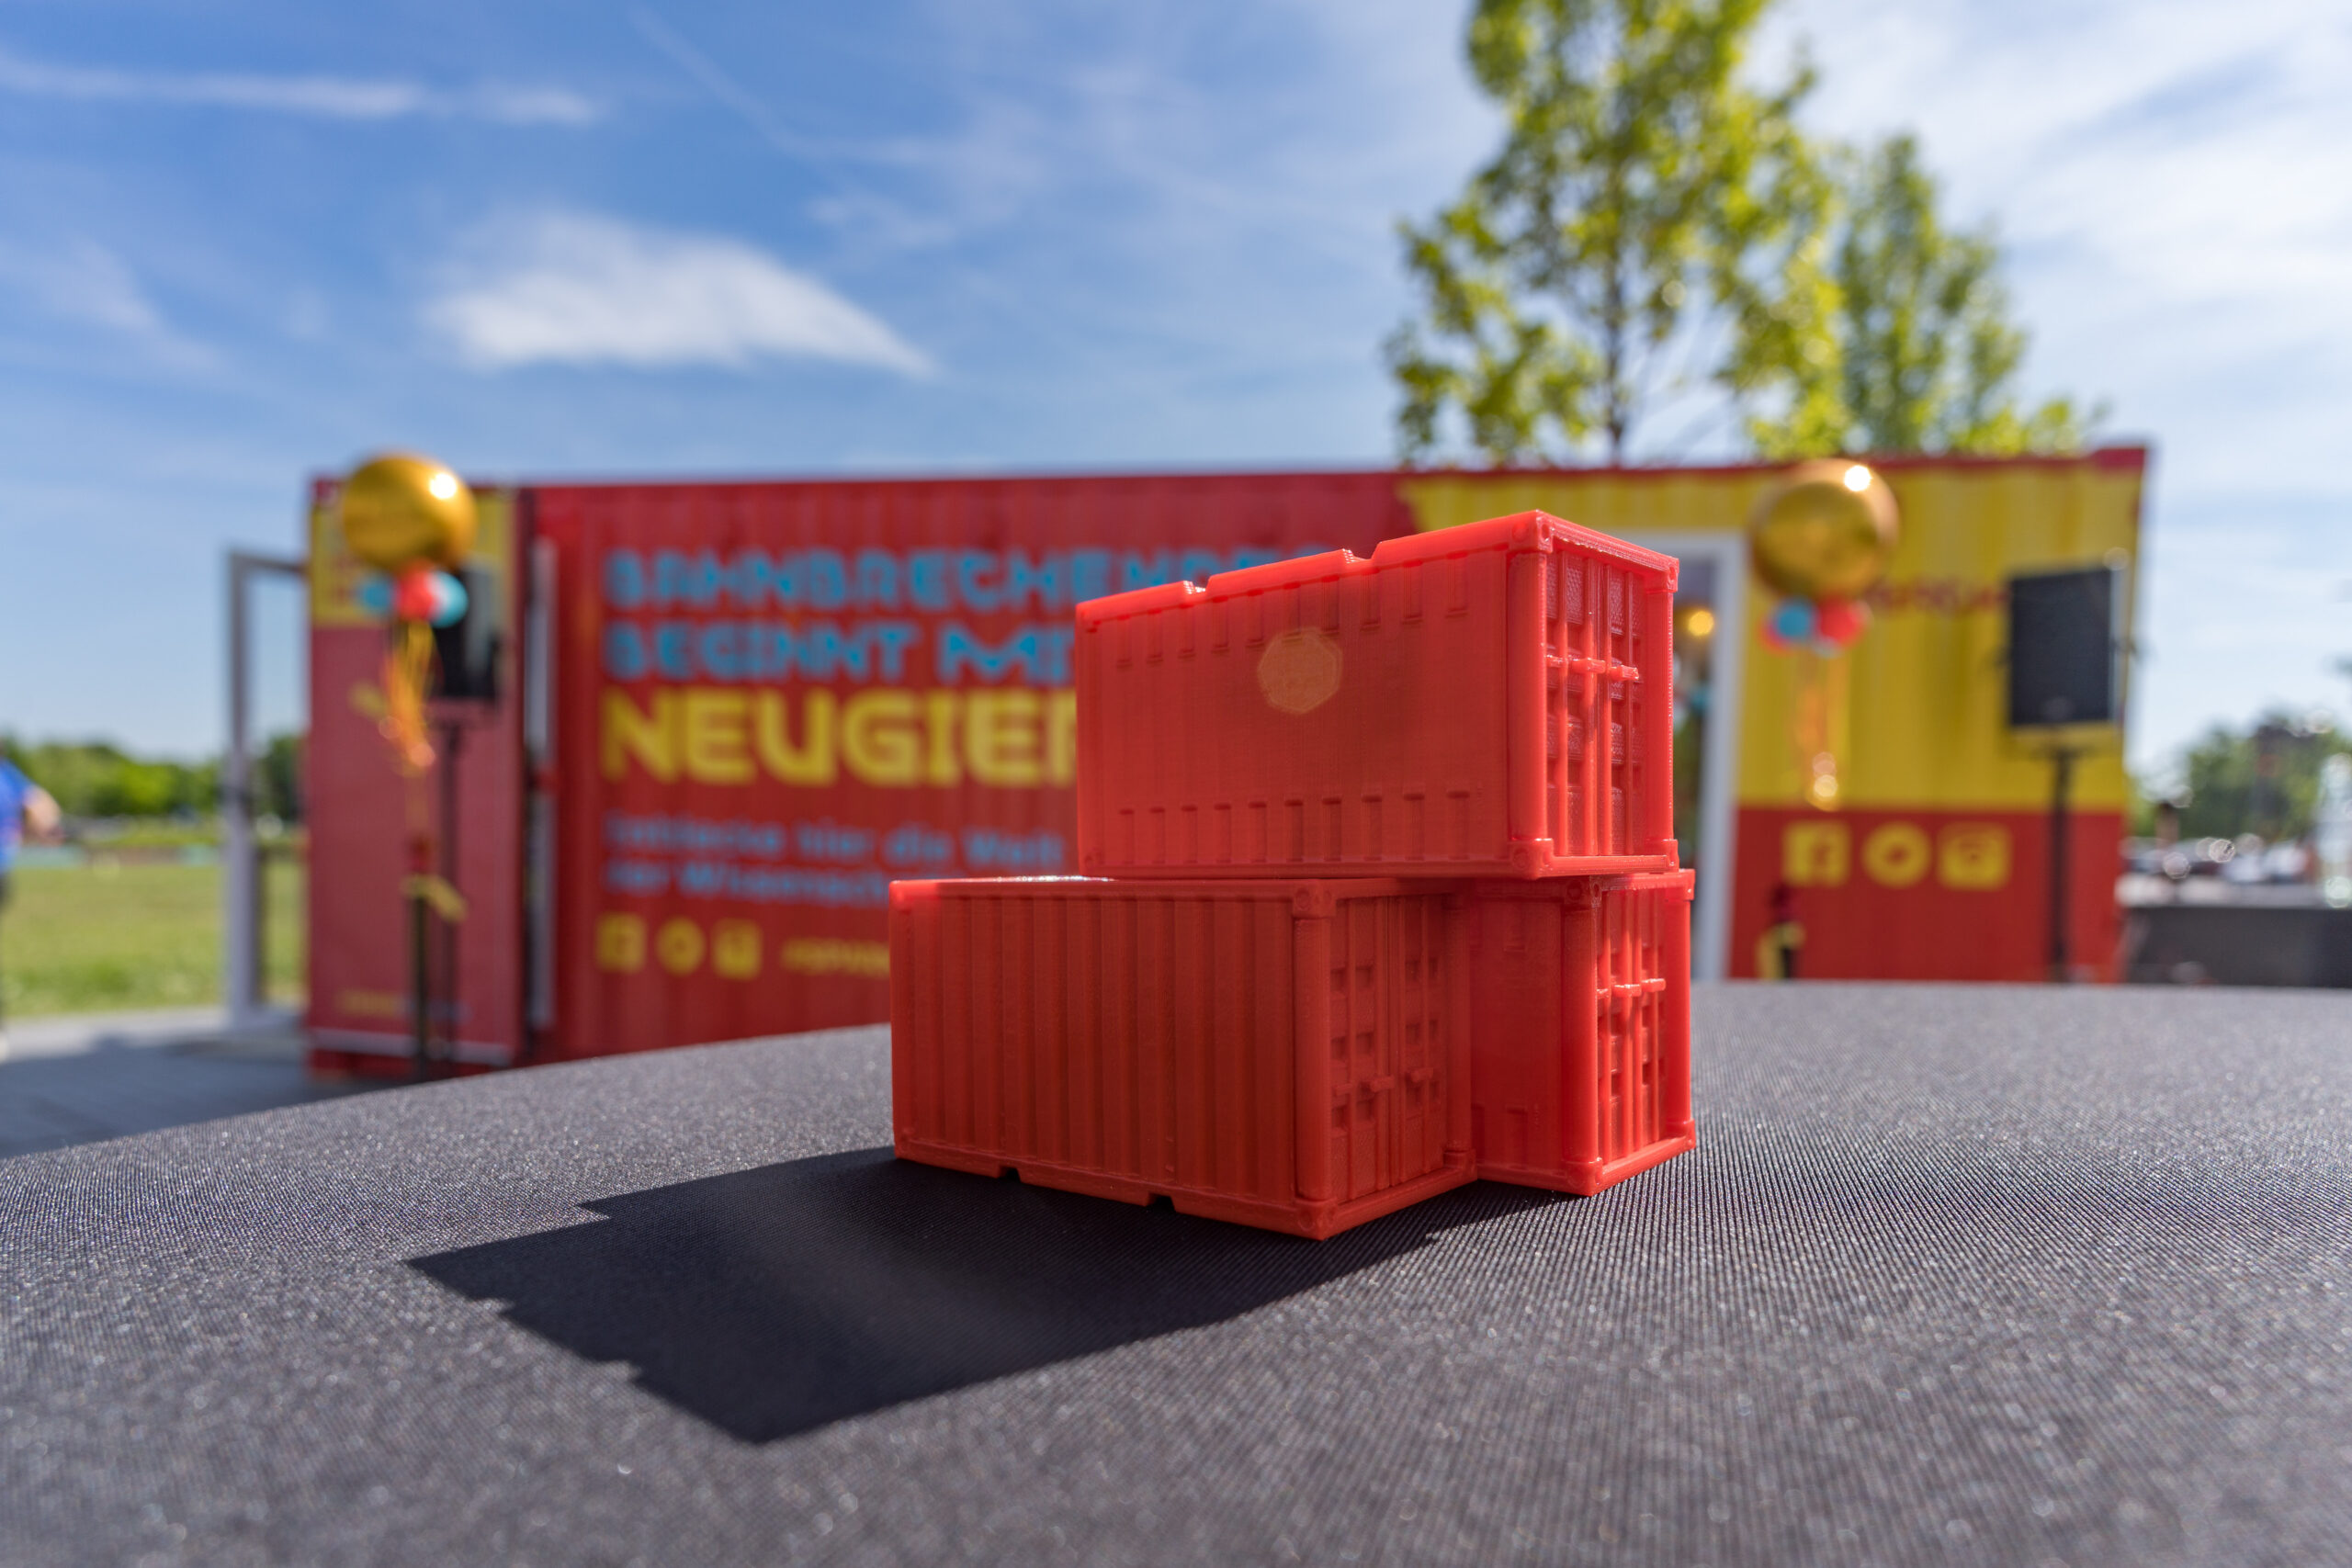 Drei kleine rote Spiezeug-Container stehen auf einem Tisch, dahinter steht ein echter Container, auf dem "Neugier" steht und in dem ein Merck-Schullabor drin ist.